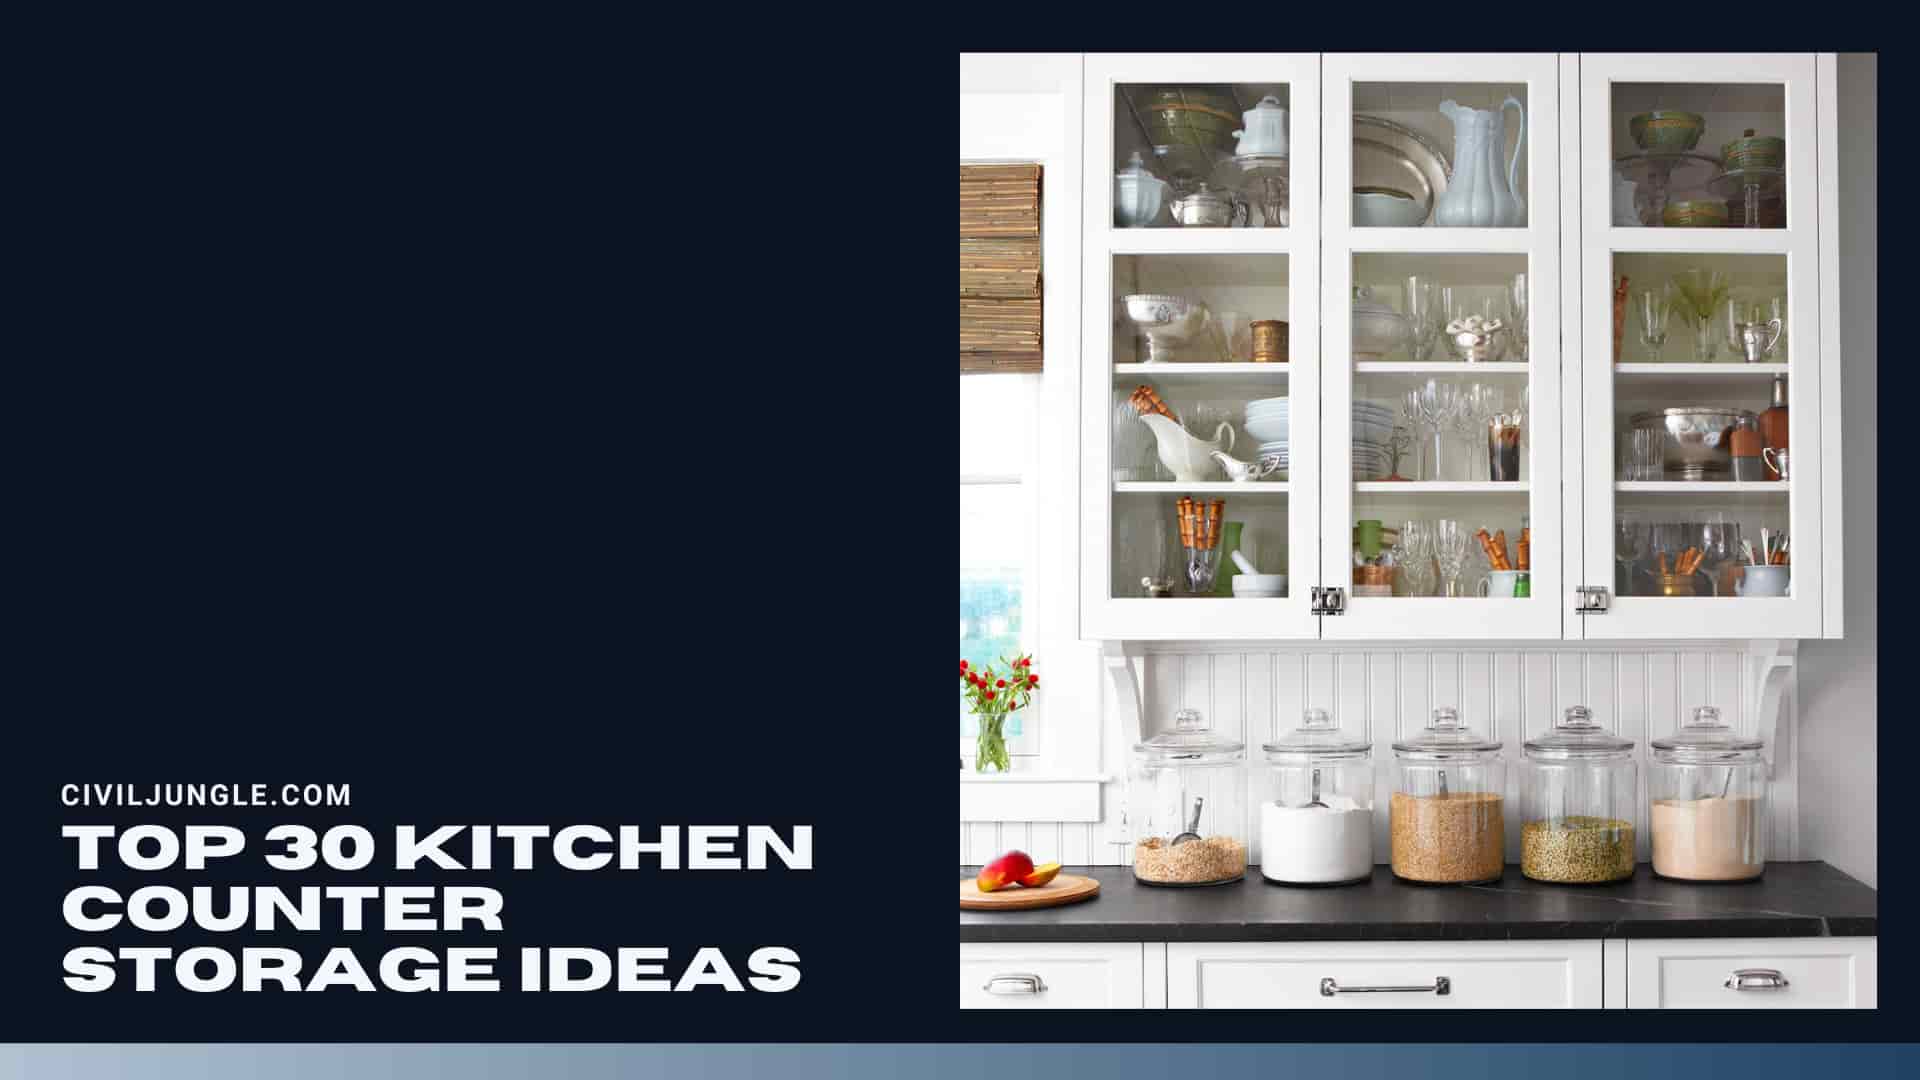 Top 30 Kitchen Counter Storage Ideas